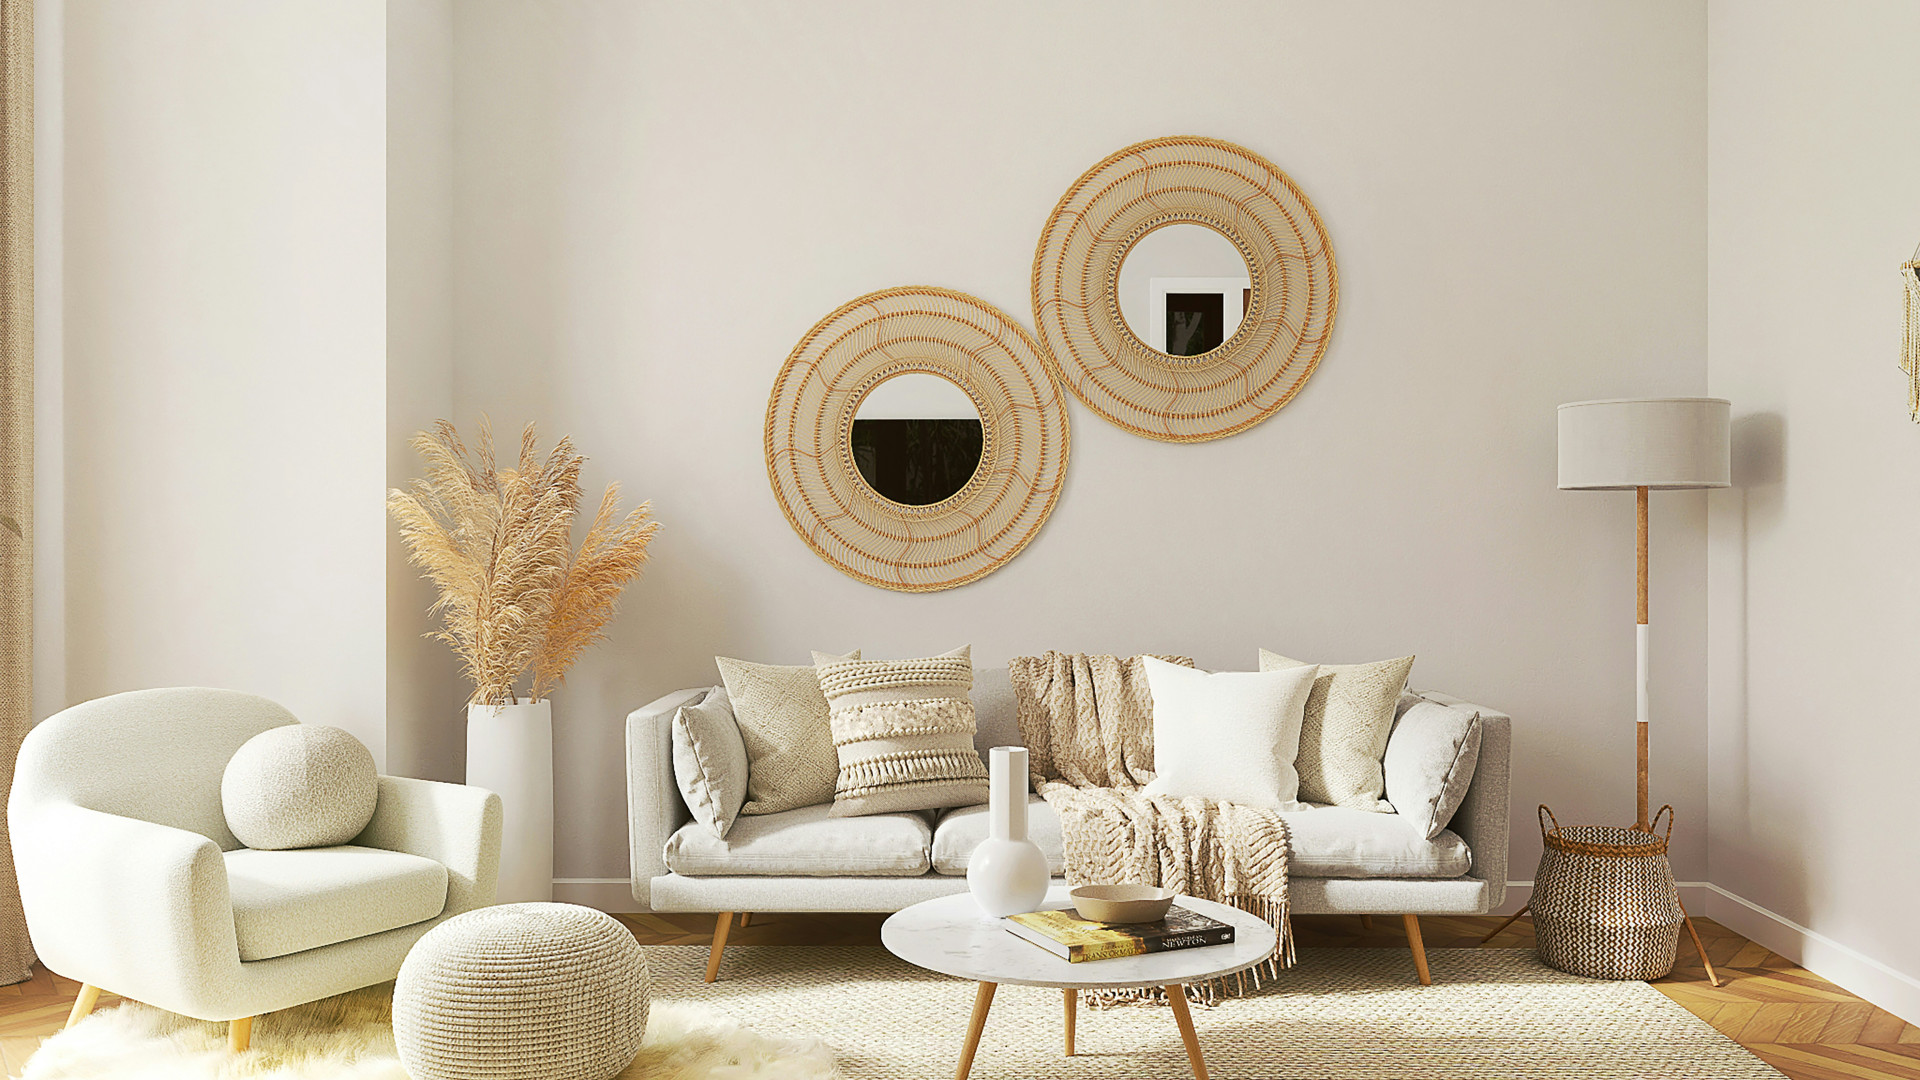 Créer une atmosphère chaleureuse : comment choisir ses meubles pour embellir son intérieur ?